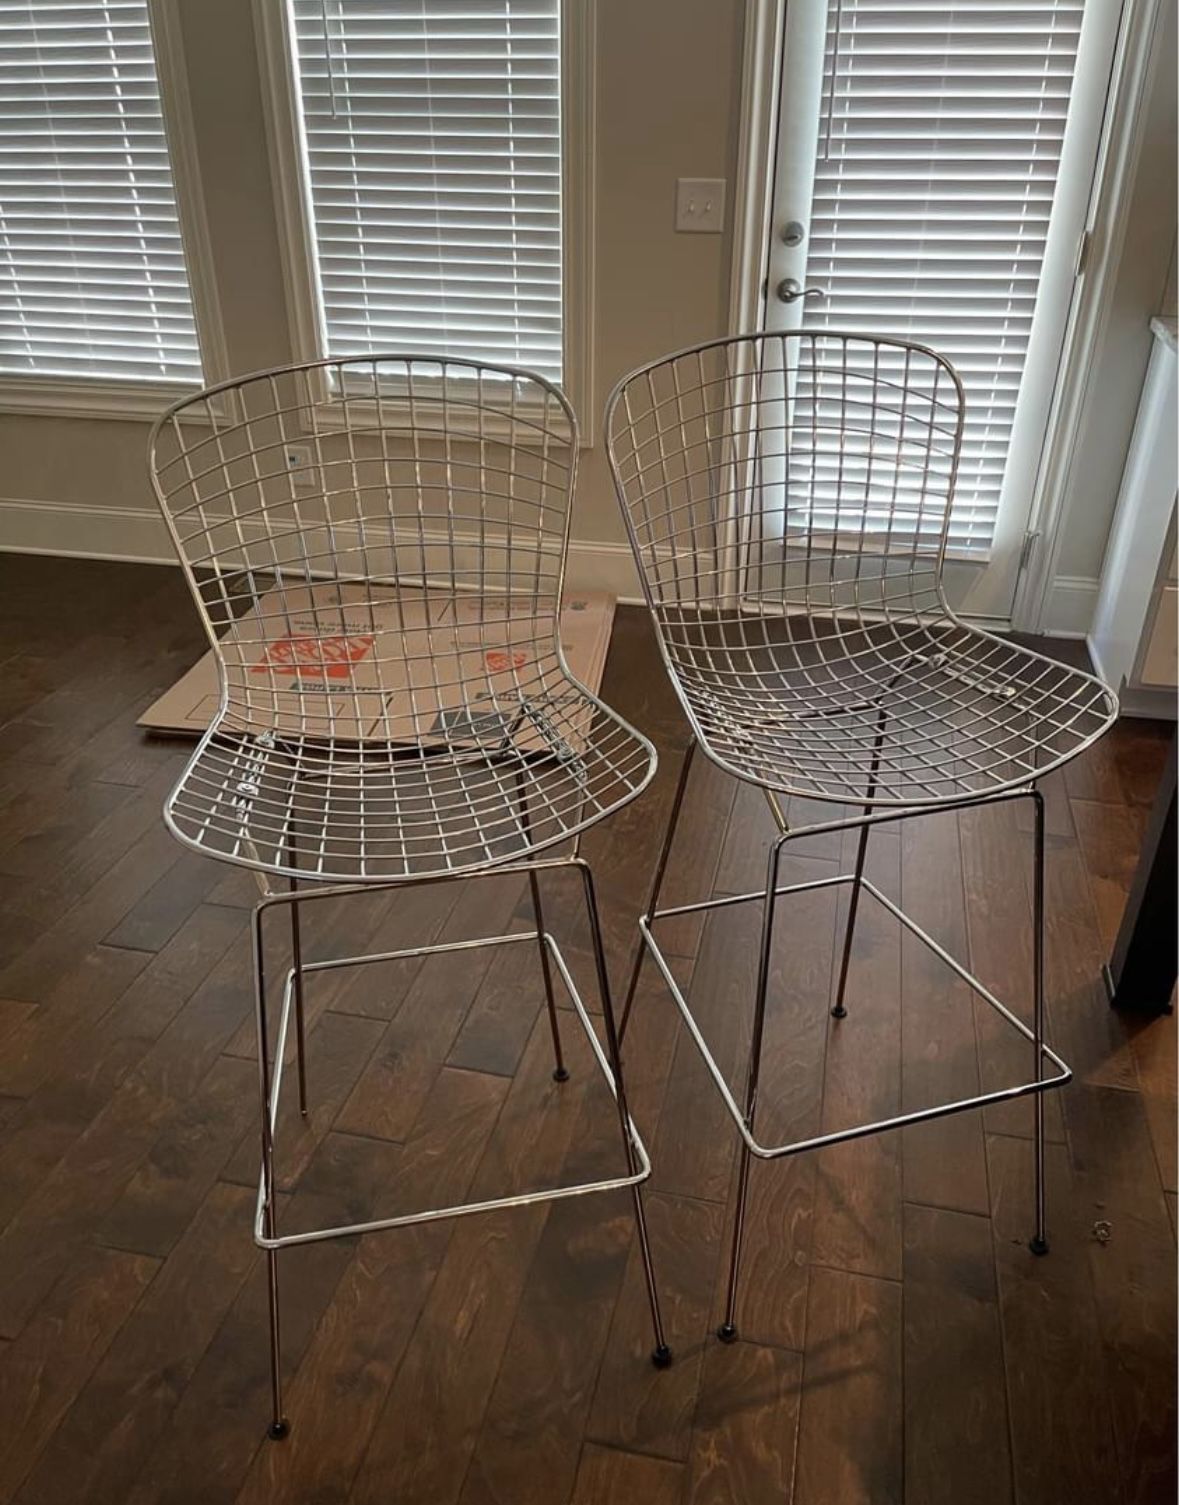 metal bar chairs / bar stools 